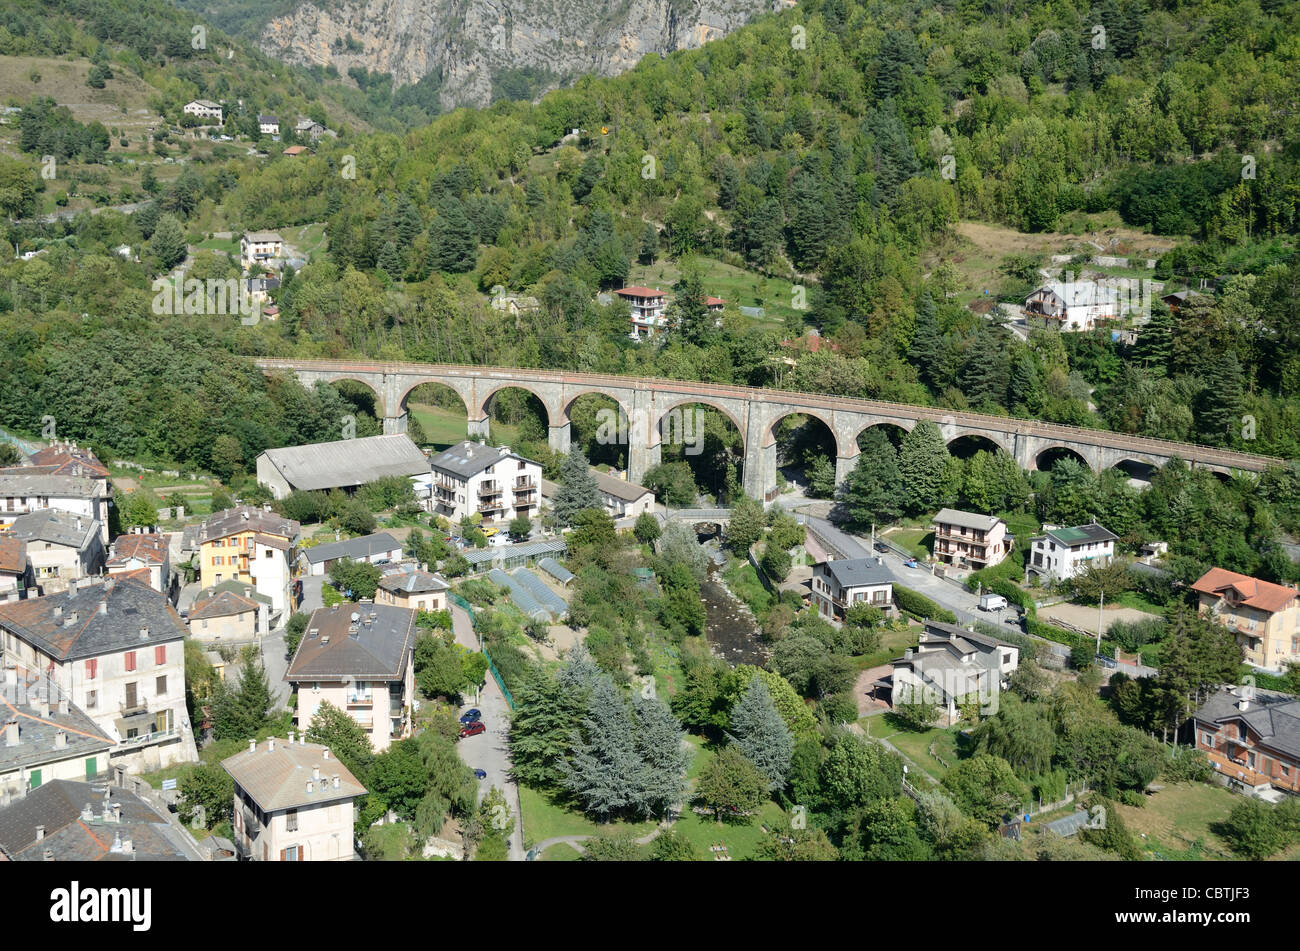 Luftaufnahme oder Hochwinkelansicht über Tende Bahn oder Eisenbahnviadukt auf der Linie Nice nach Cuneo, Tende, Roya Valley, Alpes-Maritimes, Frankreich Stockfoto